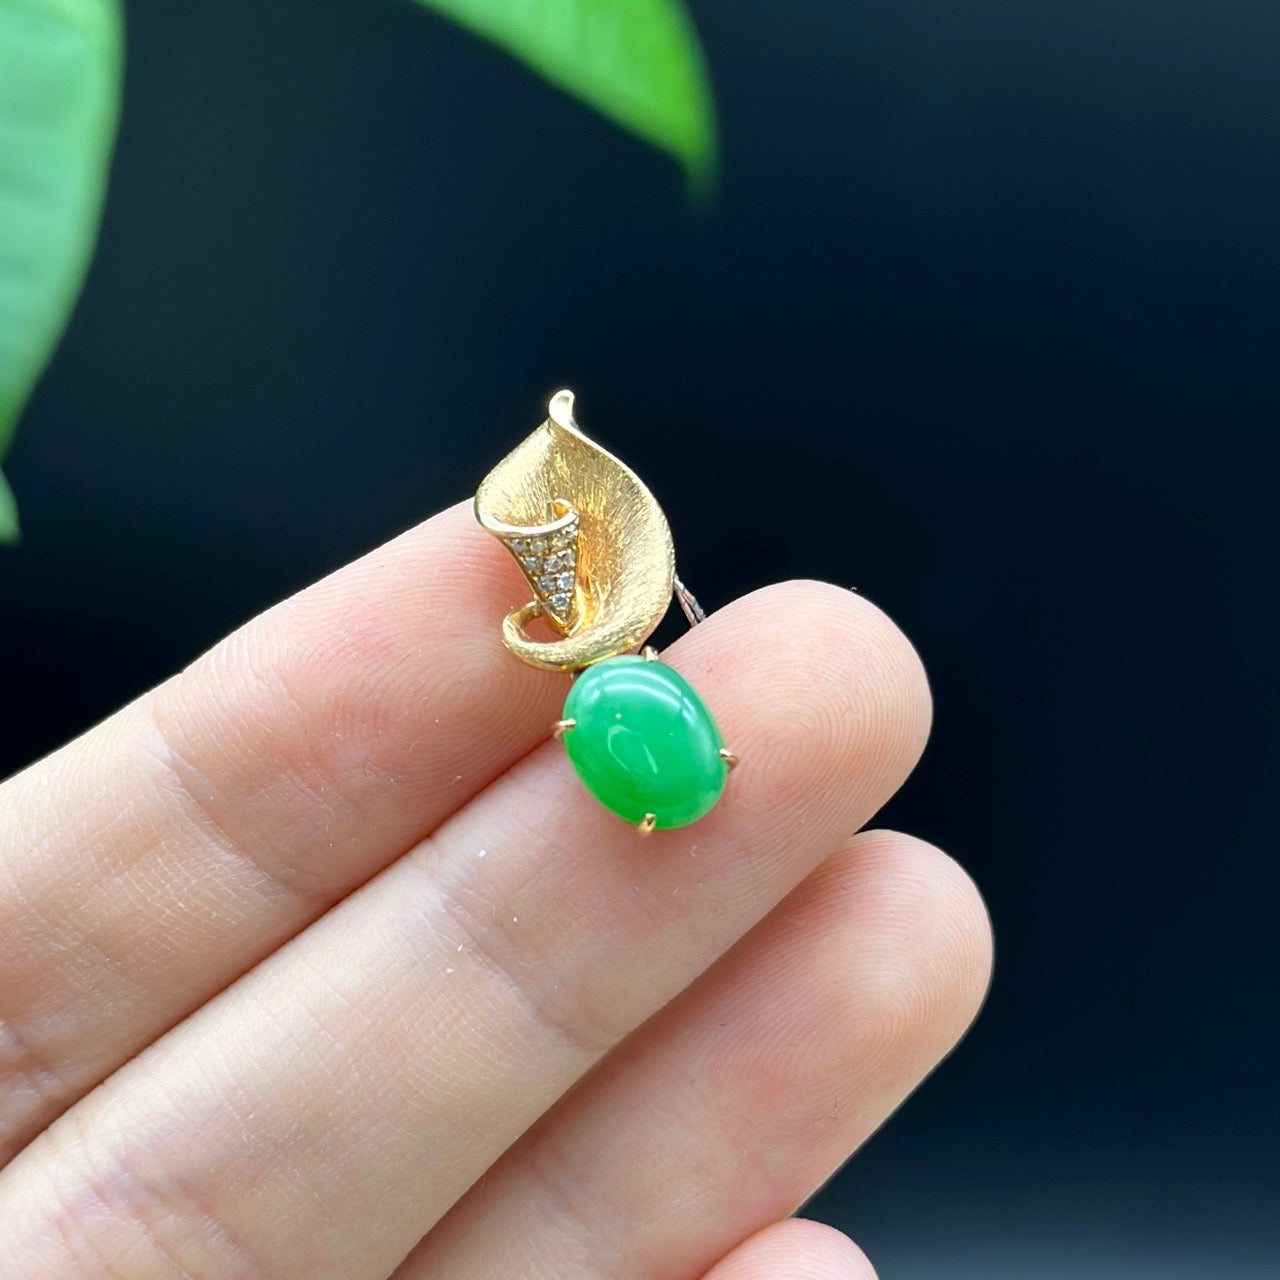 18K Rose Gold "Morning Glory" Genuine Jadeite Jade Pendant with Diamonds